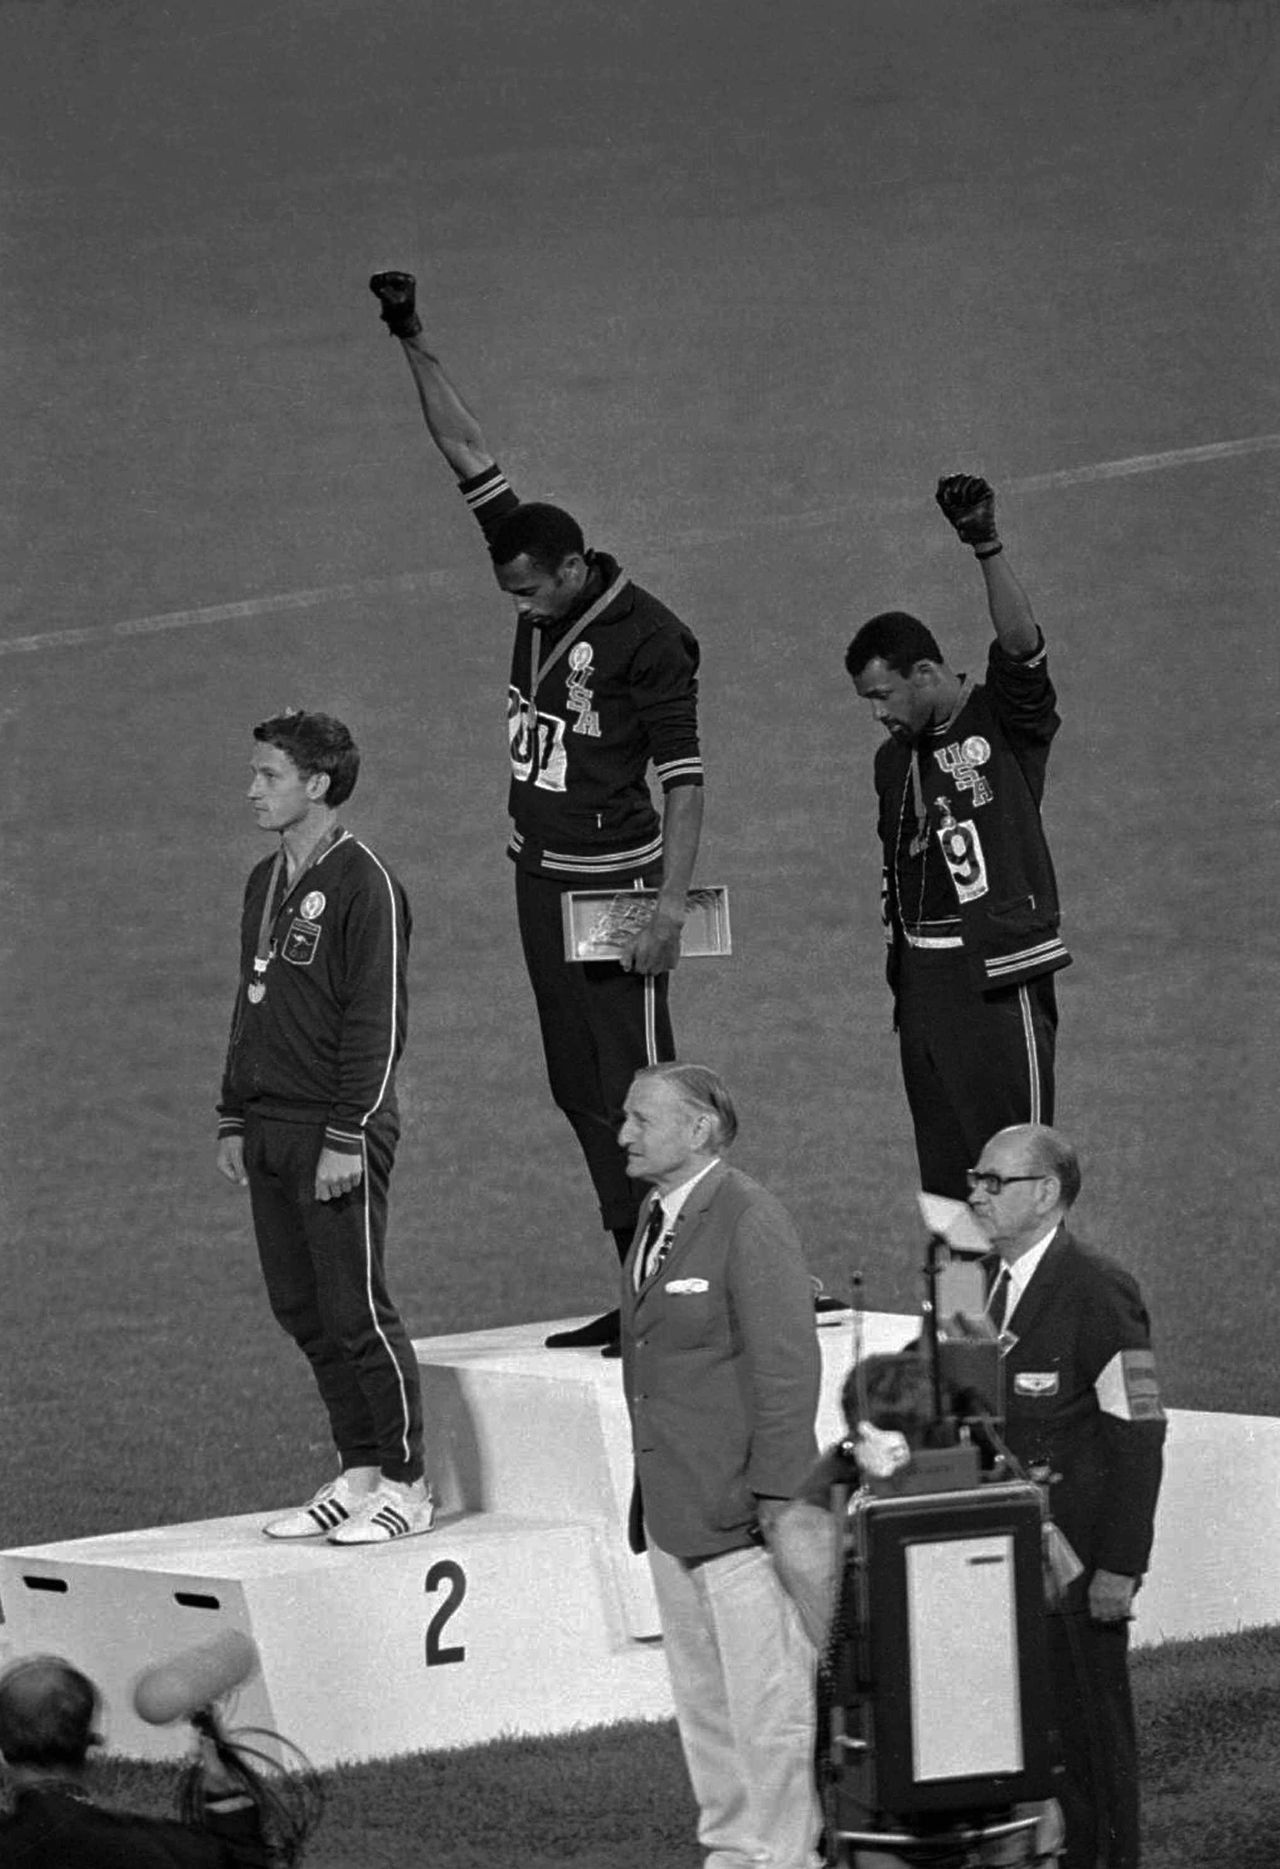 16 Οκτωμβρίου, 1968.Ο χρυσός ολυμπιονίκης Tommie Smith και ο χάλκινος ολυμπιονίκης John Carlos έστειλαν το δικό τους μήνυμα κατά των διακρίσεων, υψώνοντας τη γροθιά τους στο βάθρο μετά τον αγώνα των 200 μ.